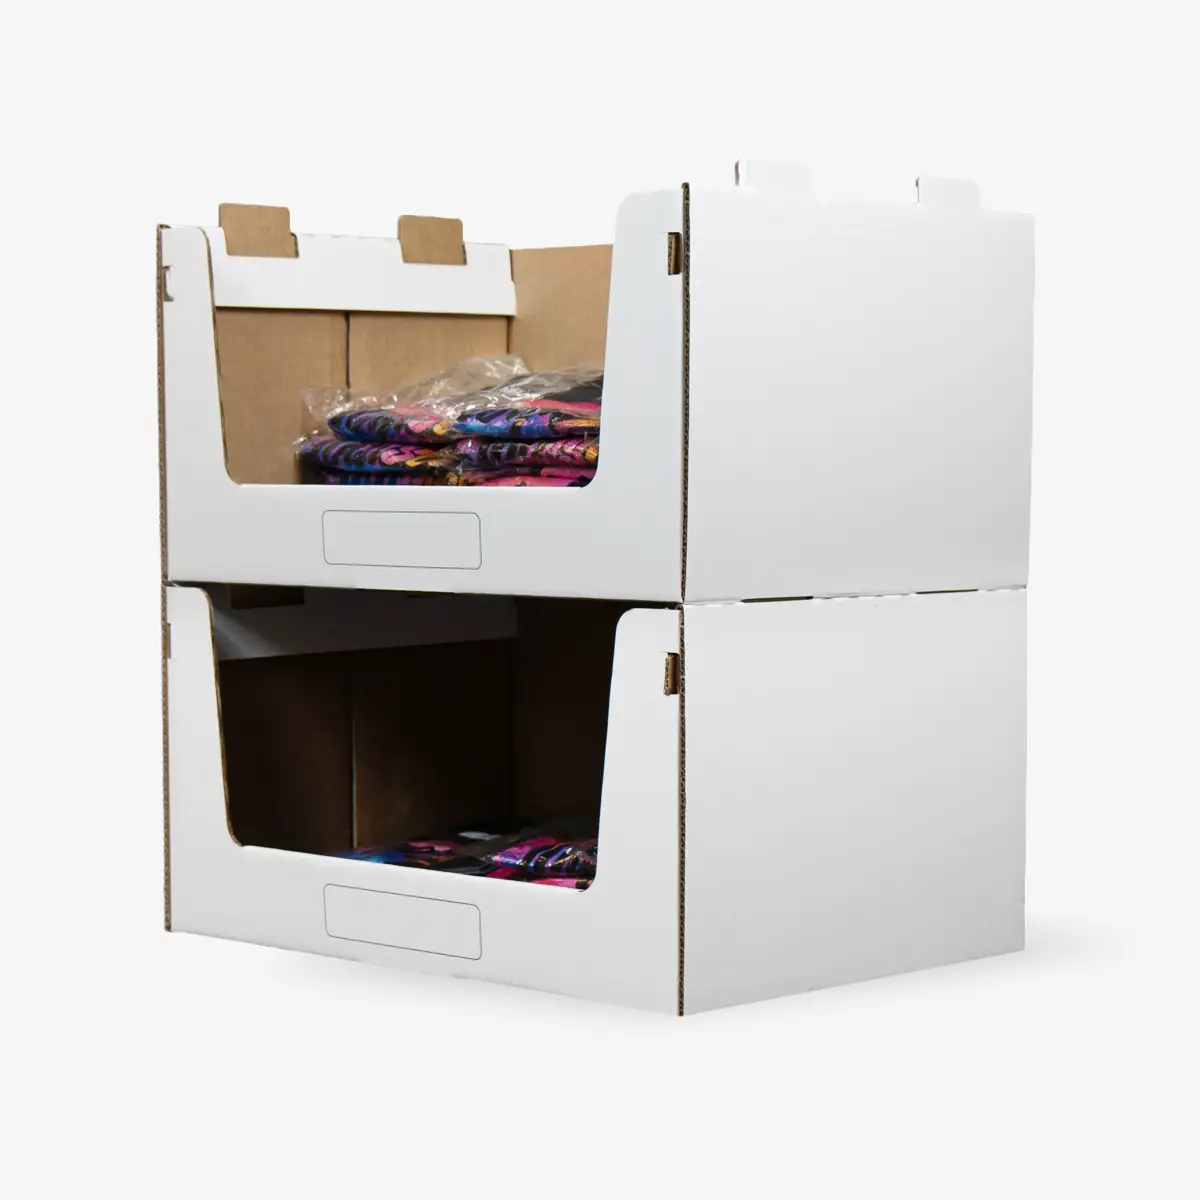 lagerkarton.de lagerkarton quer pickbox wide productimage produktbild sideview seitenansicht sichtlagerkasten lagerbox stapelbox 02